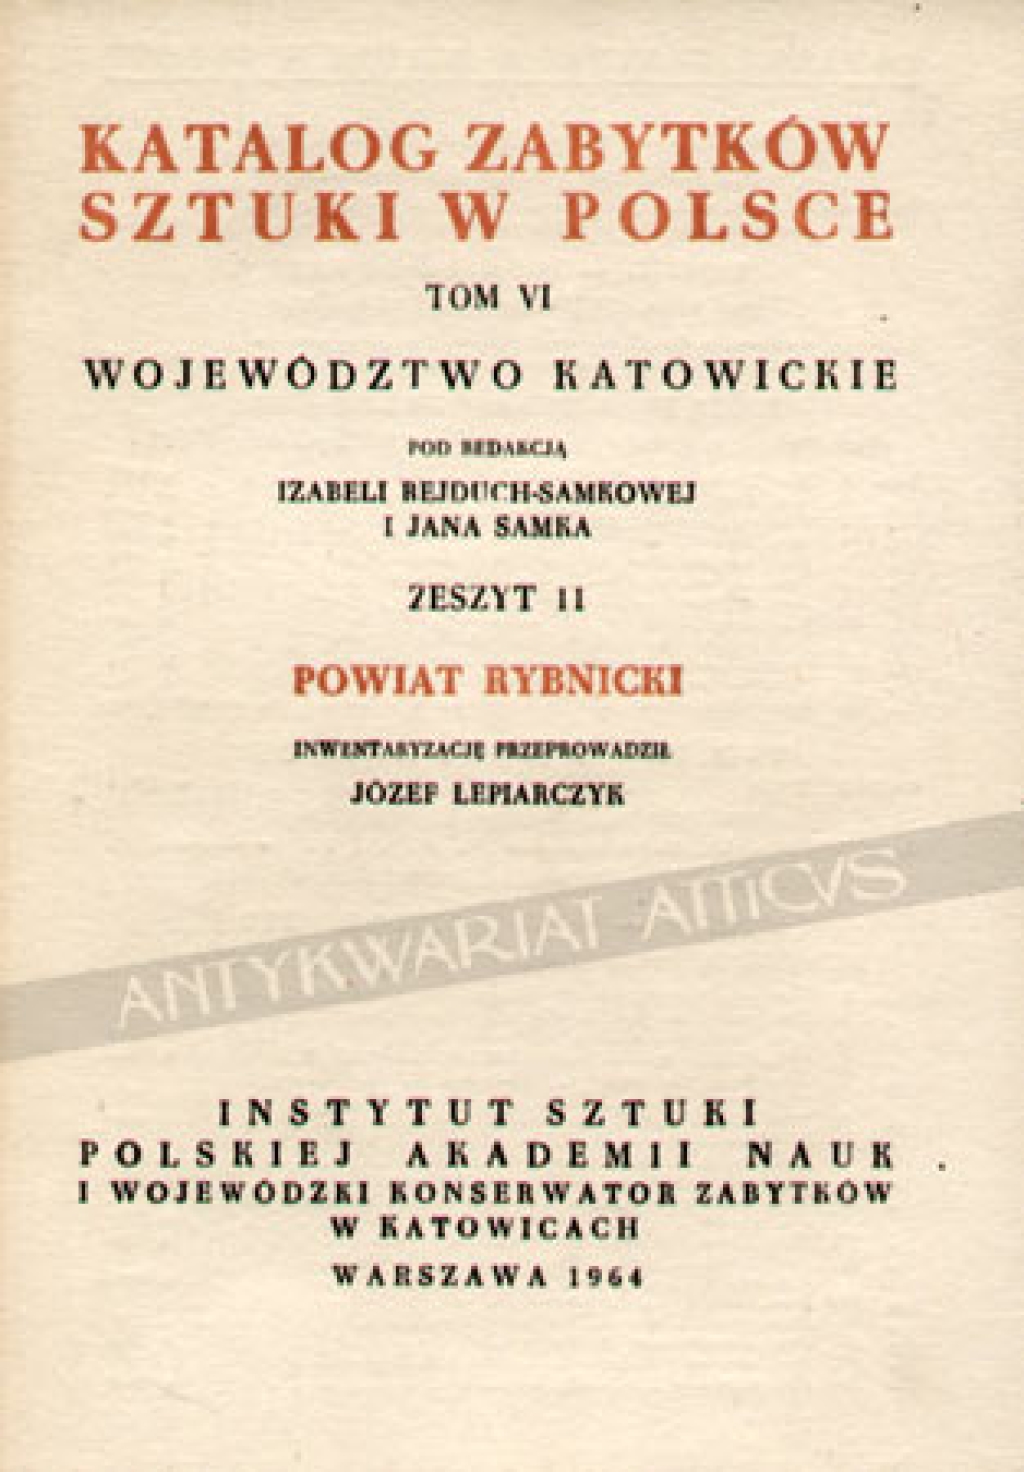 Katalog zabytków sztuki w Polsce, t. VI. Województwo Katowickie. Zeszyt 11, Powiat Rybnicki